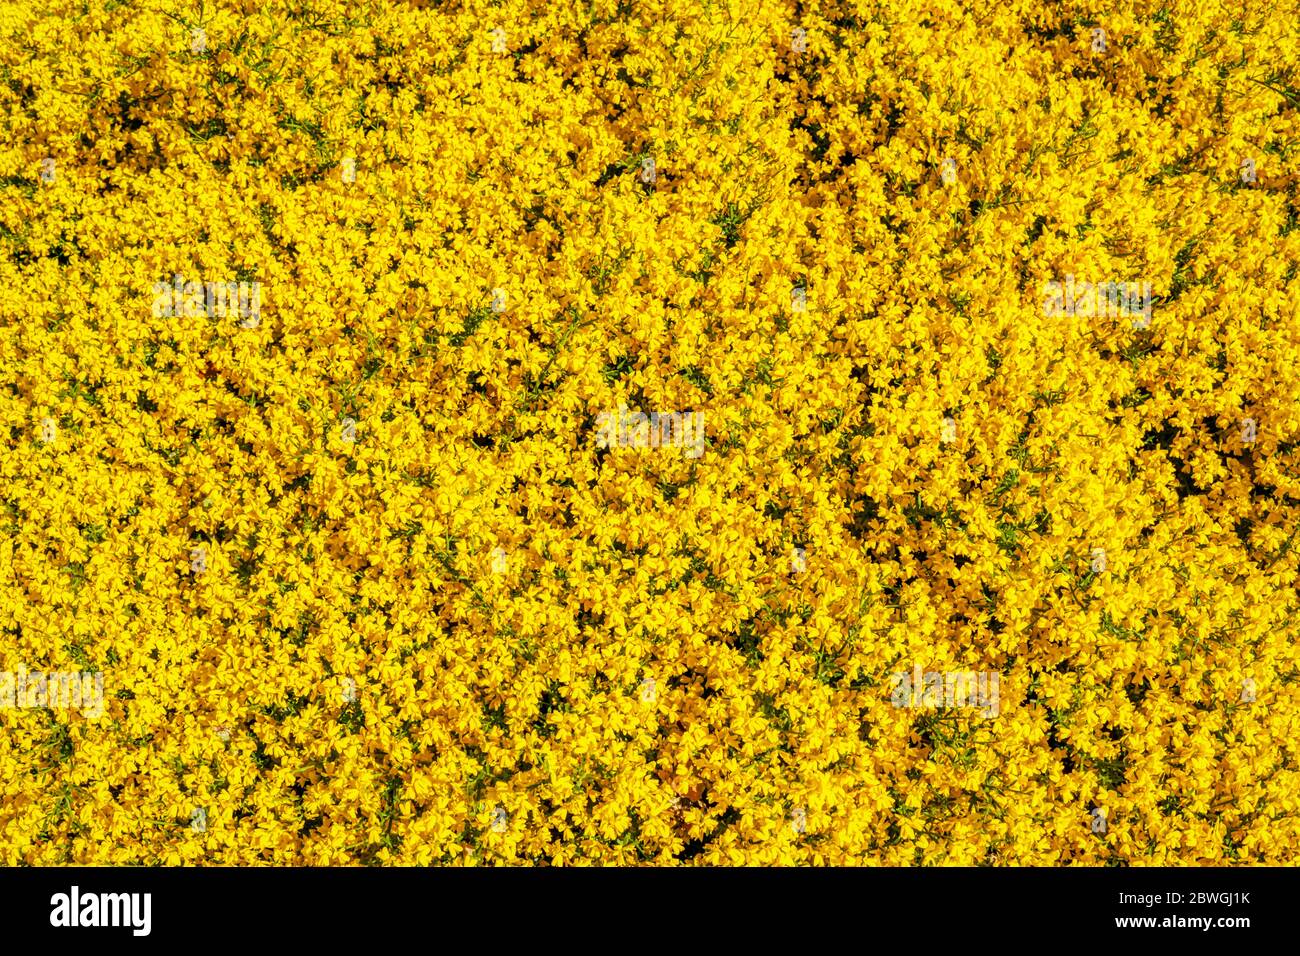 Sanftes Gelb, eine Ausdehnung von gelbem Genista lydia, Besen, RHS Gardens, Wisley, Großbritannien Stockfoto